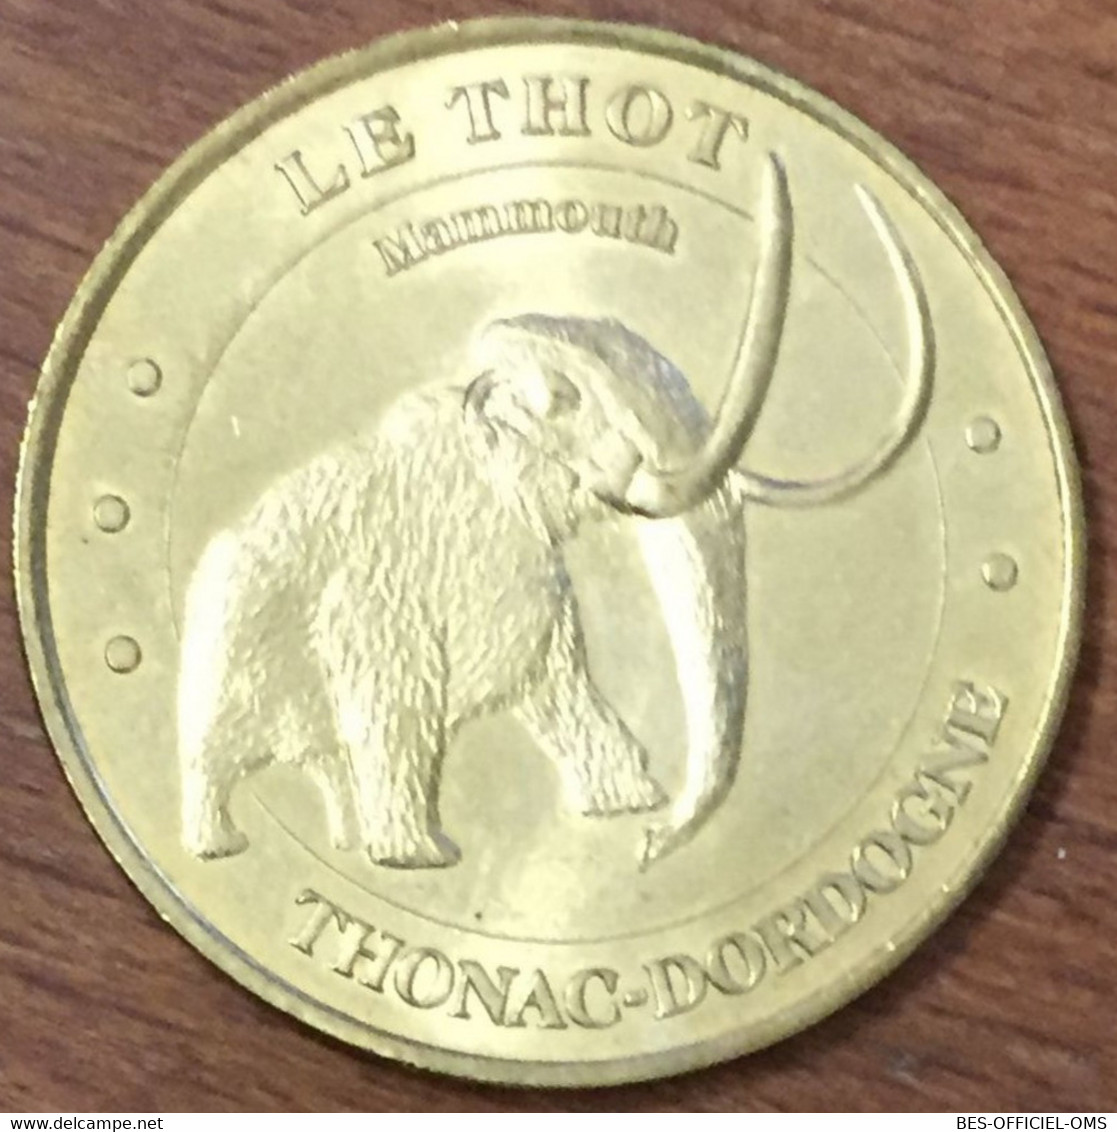 24 LE THOT MAMMOUTH THONAC DORDOGNE MDP 2005 MEDAILLE SOUVENIR MONNAIE DE PARIS JETON TOURISTIQUE MEDALS COINS TOKENS - 2005